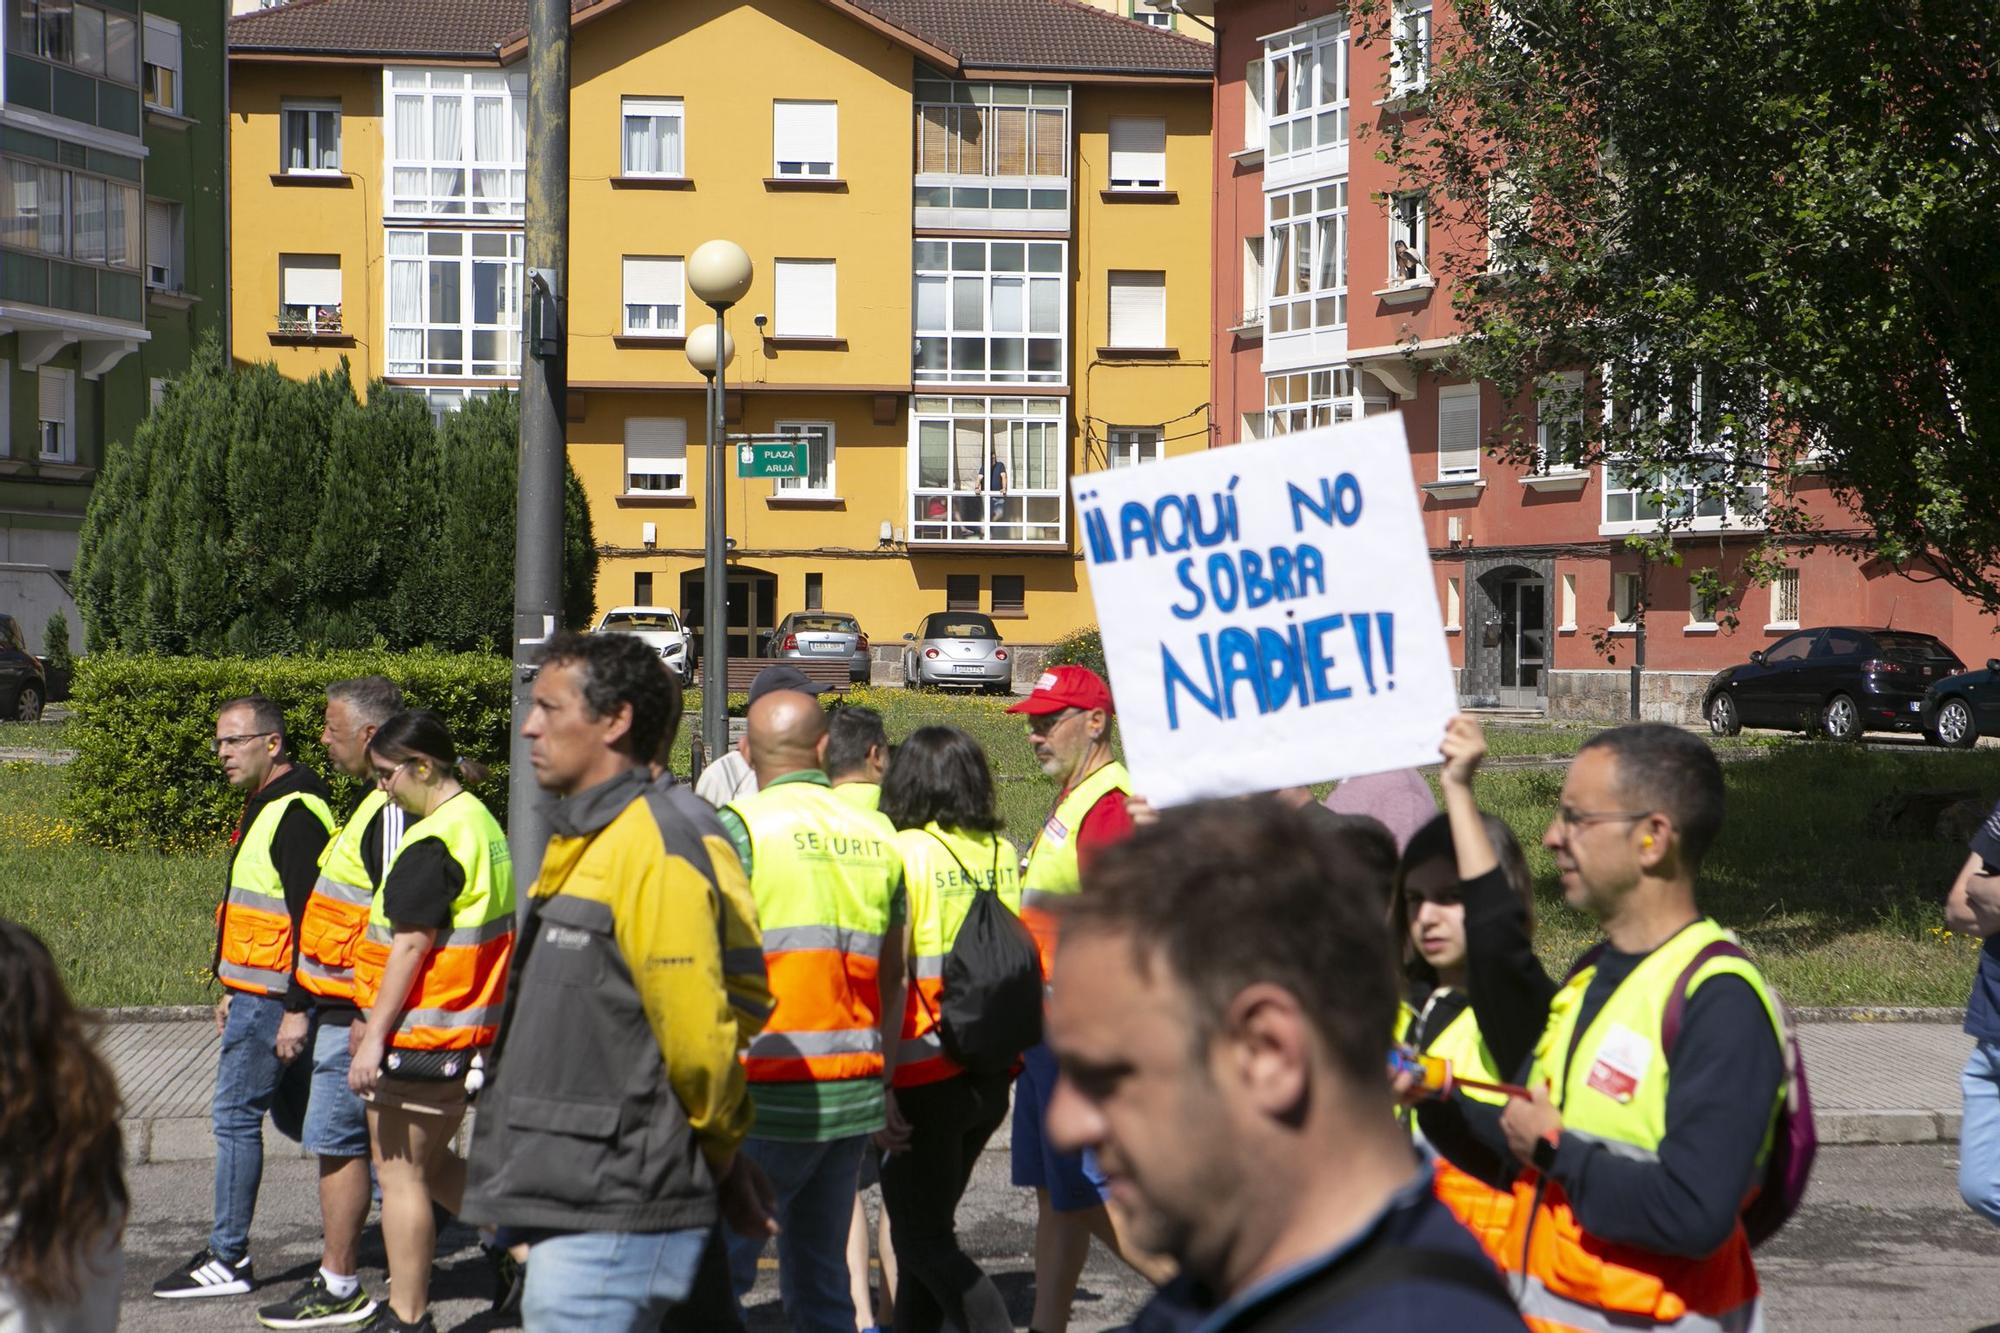 Los trabajadores de Saint-Gobain salen a la calle para frenar los despidos en Avilés